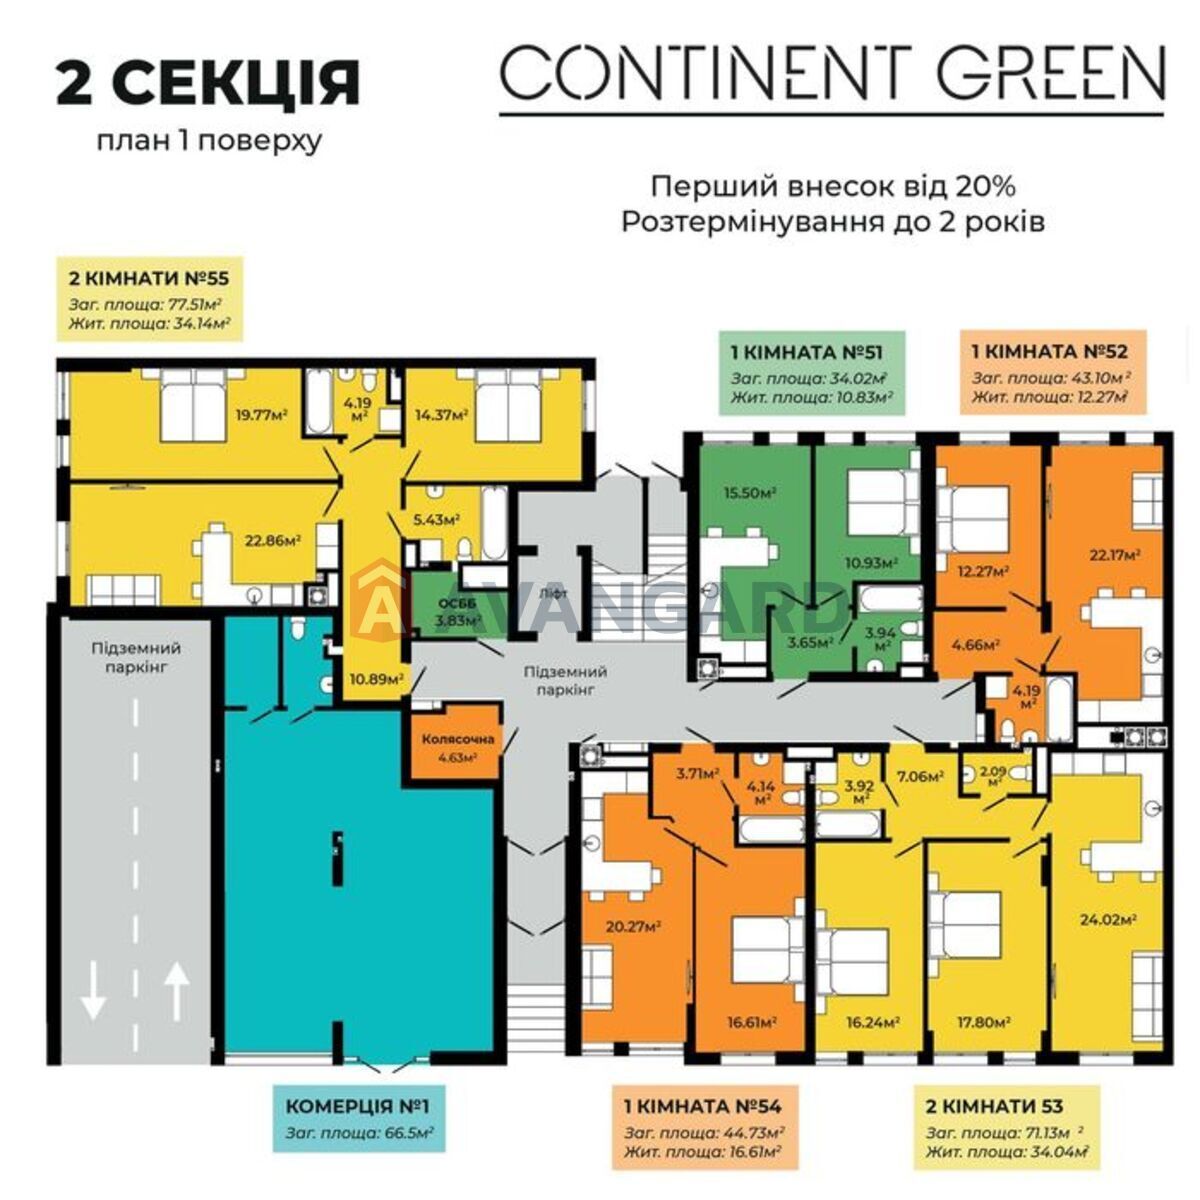 Продаж 2 кімнатної квартири в ЖК CONTINENT GREEN